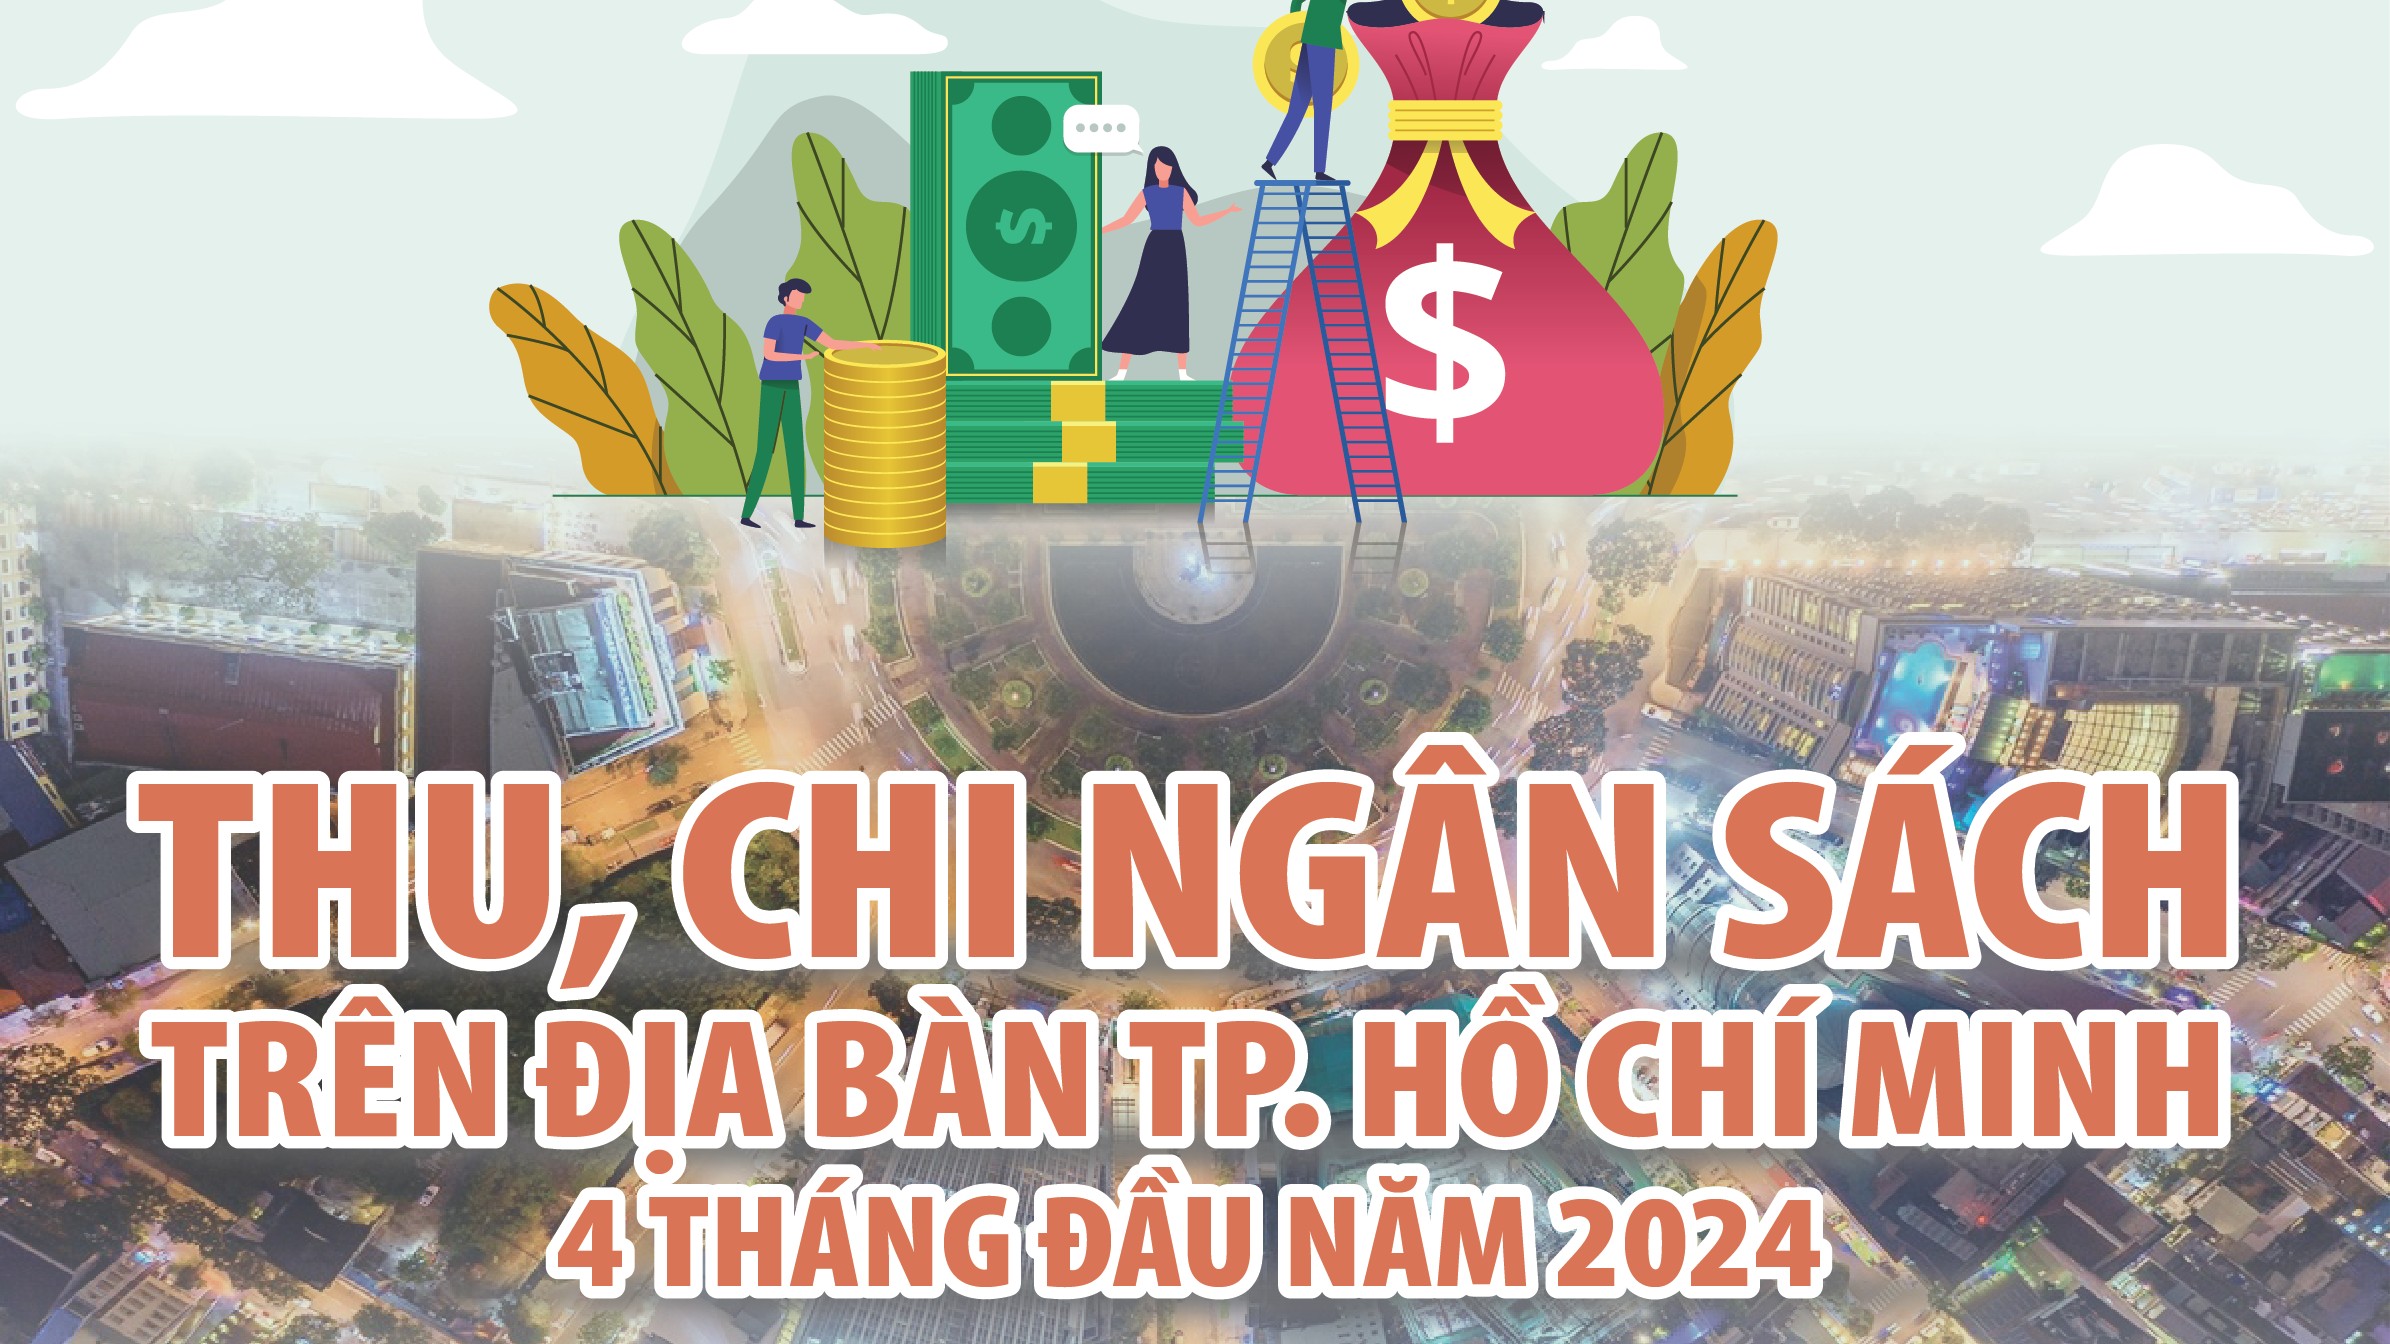 Infographics: Thu, chi ngân sách trên địa bàn TP. Hồ Chí Minh 4 tháng năm 2024